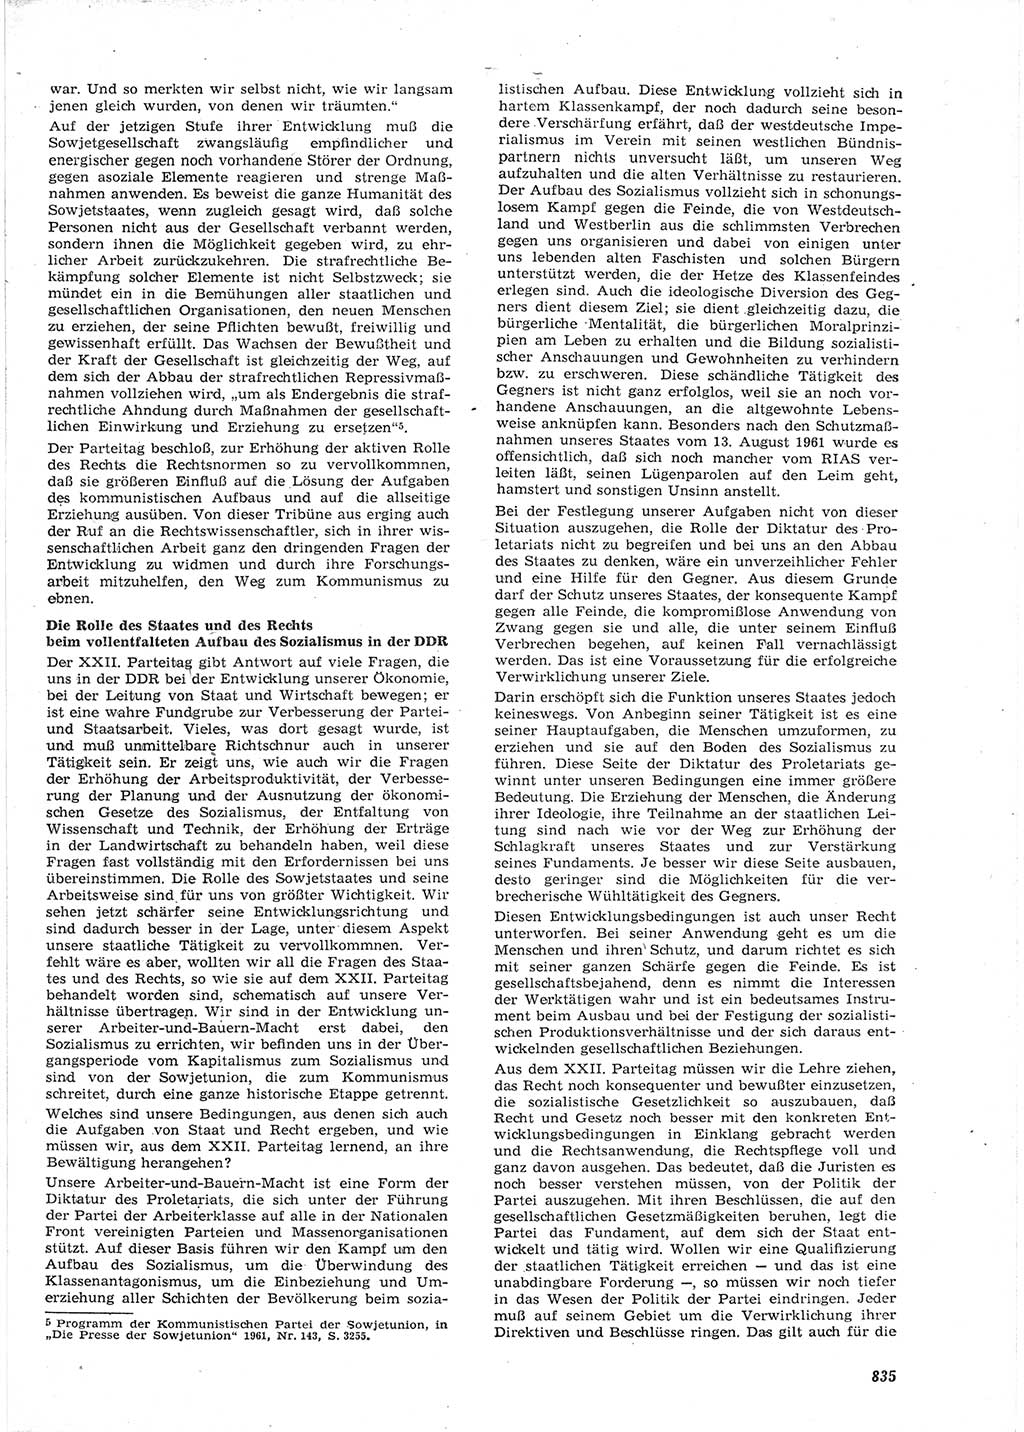 Neue Justiz (NJ), Zeitschrift für Recht und Rechtswissenschaft [Deutsche Demokratische Republik (DDR)], 15. Jahrgang 1961, Seite 835 (NJ DDR 1961, S. 835)